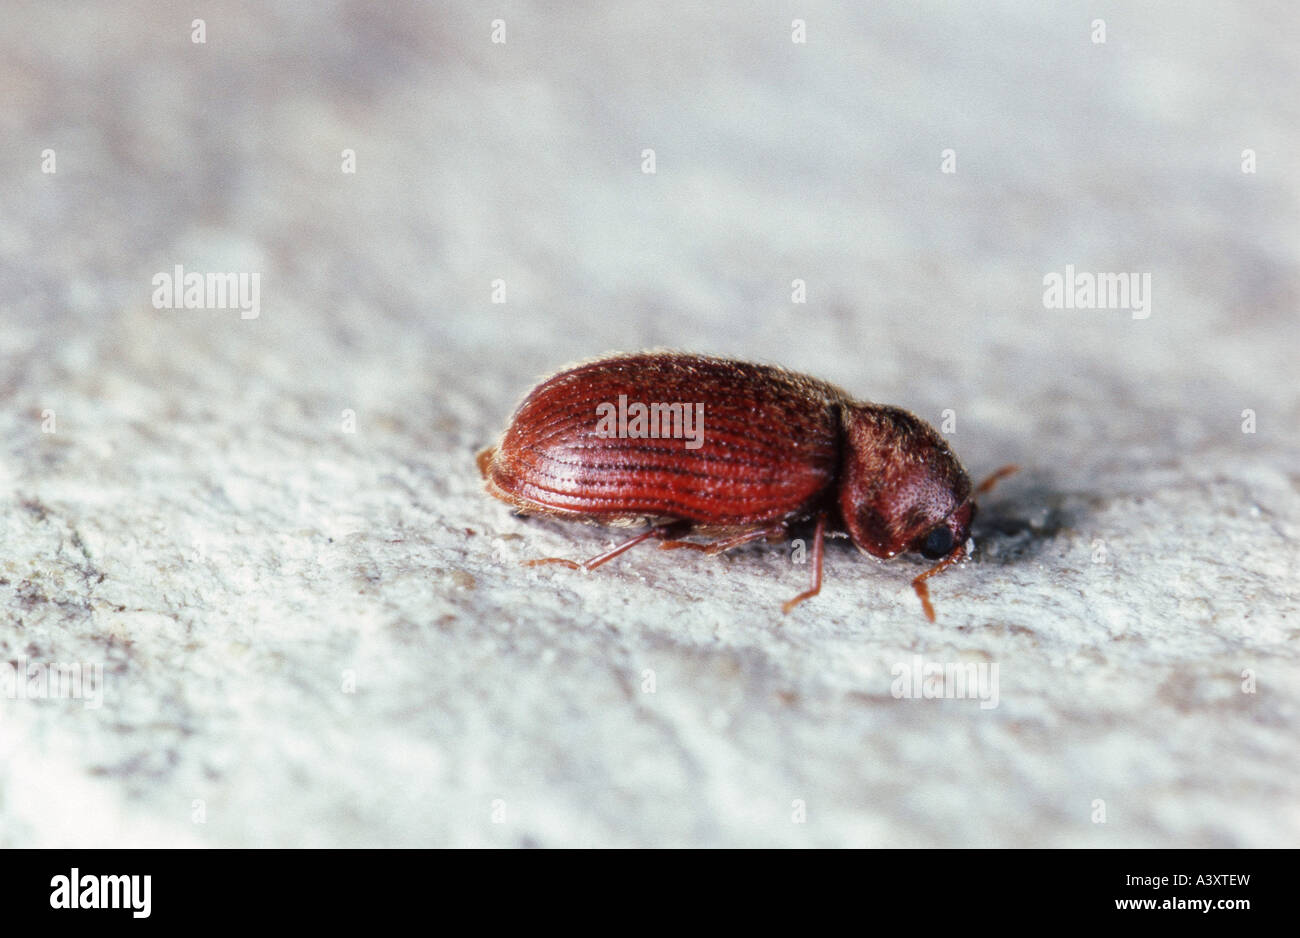 drugstore beetle, drug store weevil (biscuit beetle, bread beetle) (Stegobium paniceum), imago Stock Photo